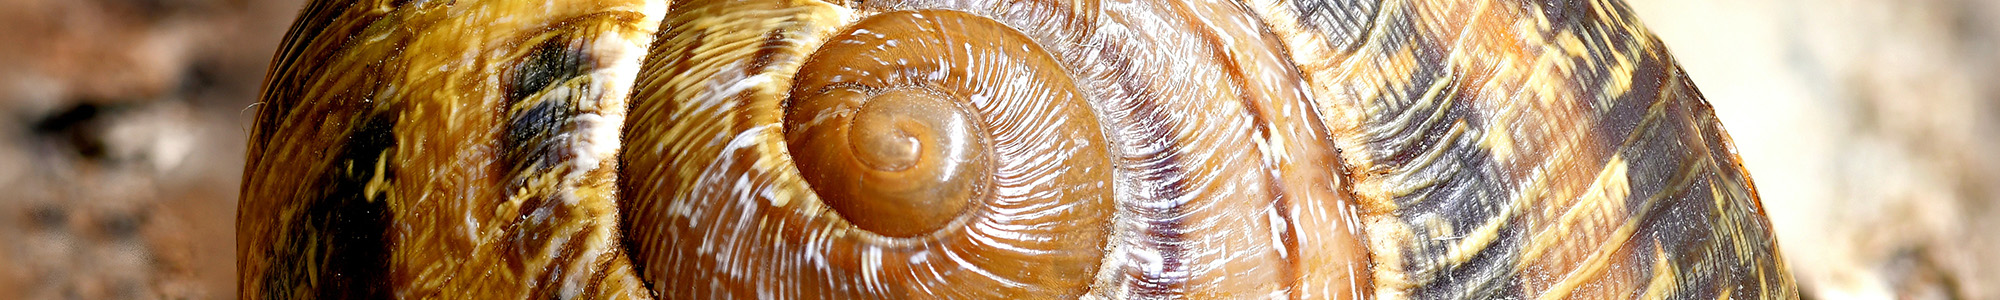 Texture AM snailshell v2